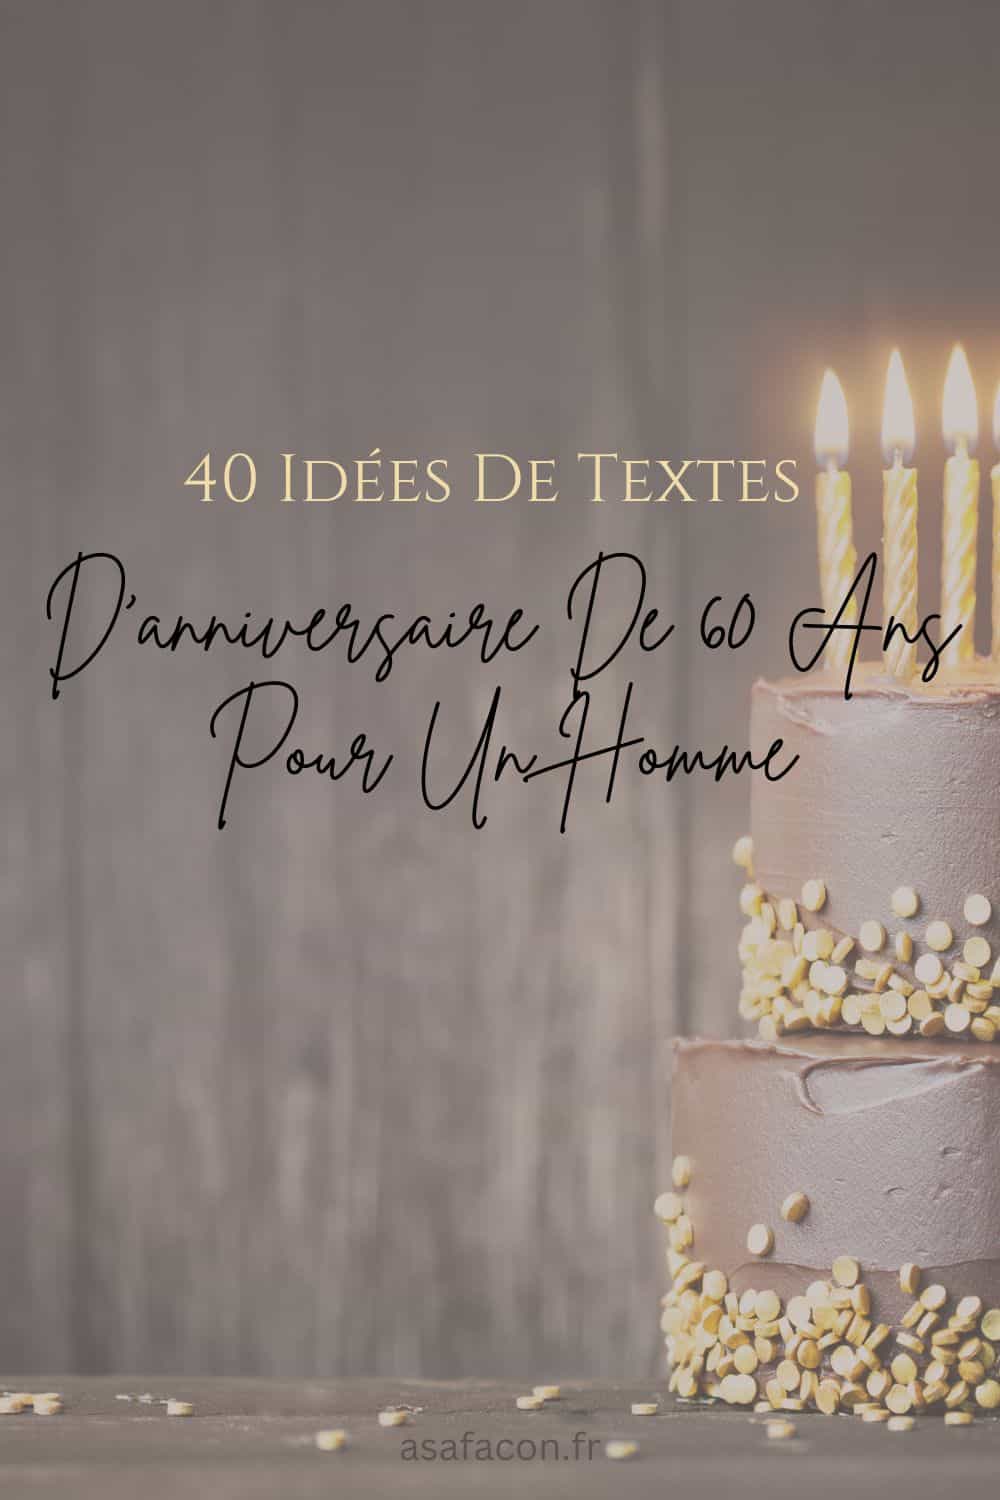 40 Idées De Textes D'anniversaire De 60 Ans Pour Un Homme